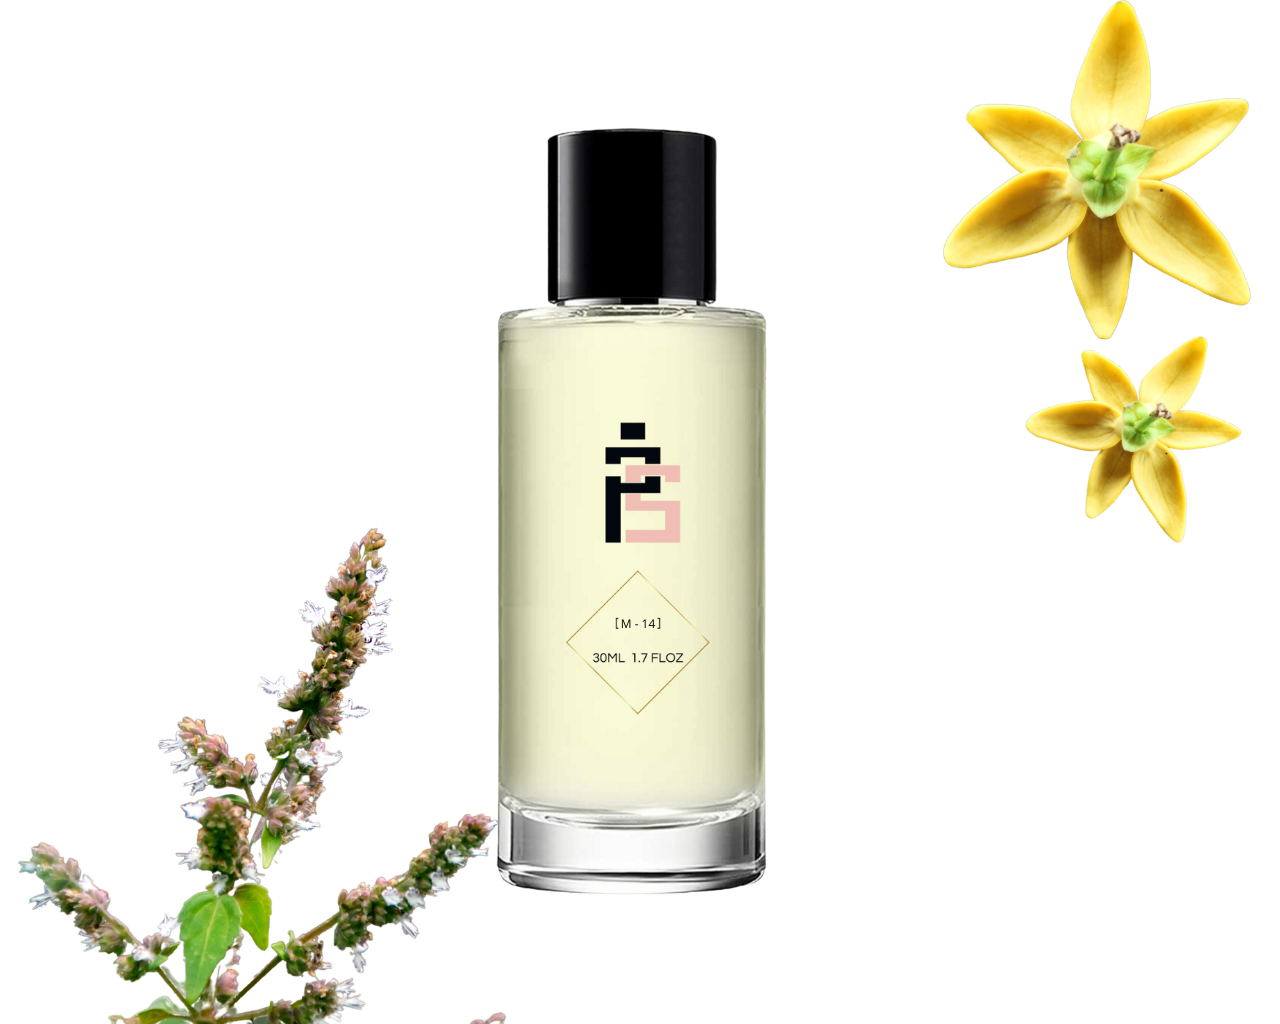 Parfum - M14 | similaire à Supreme Bouquet